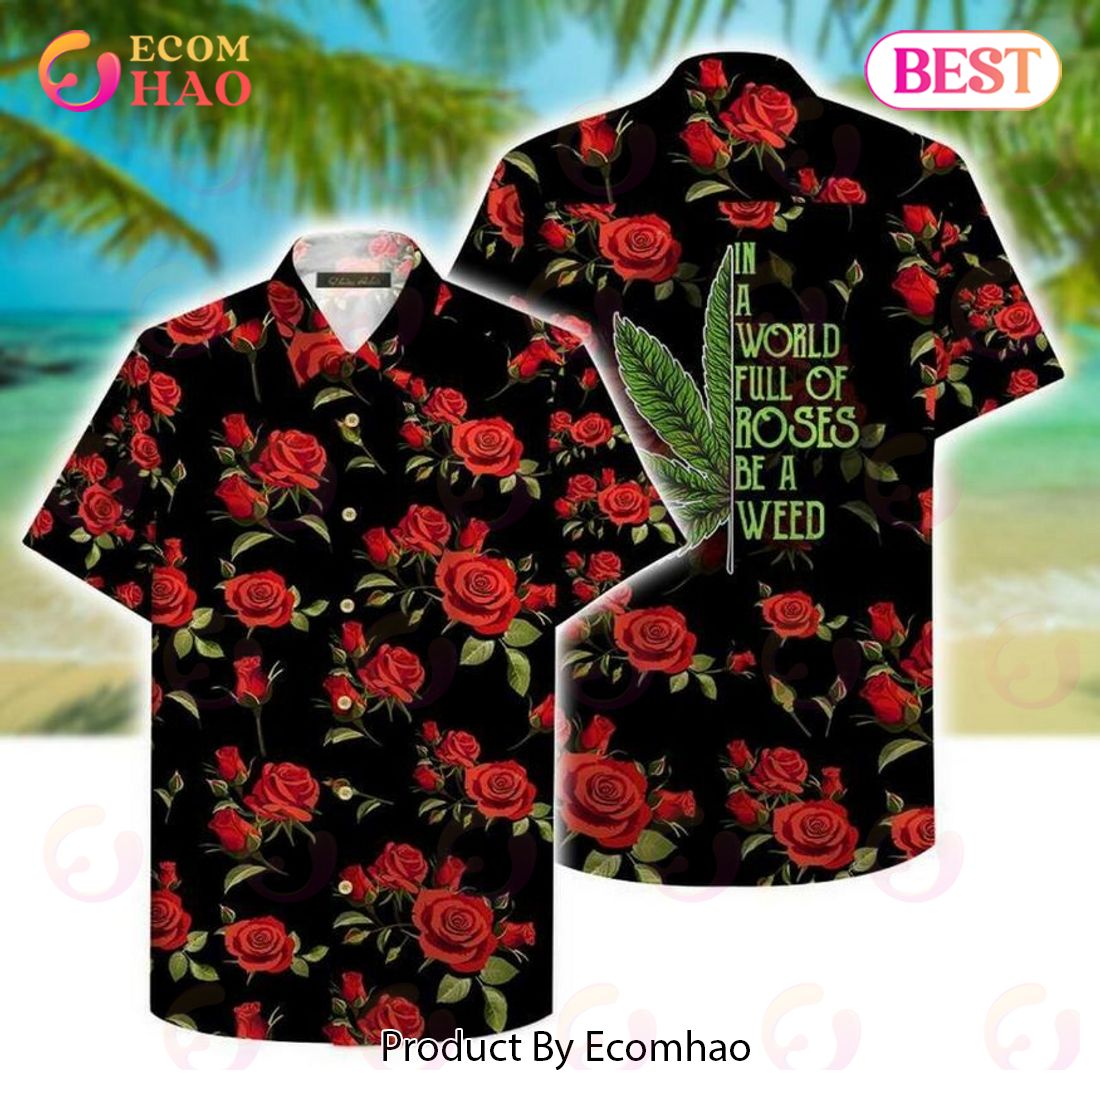 Be A Weed Hawaiian Shirt